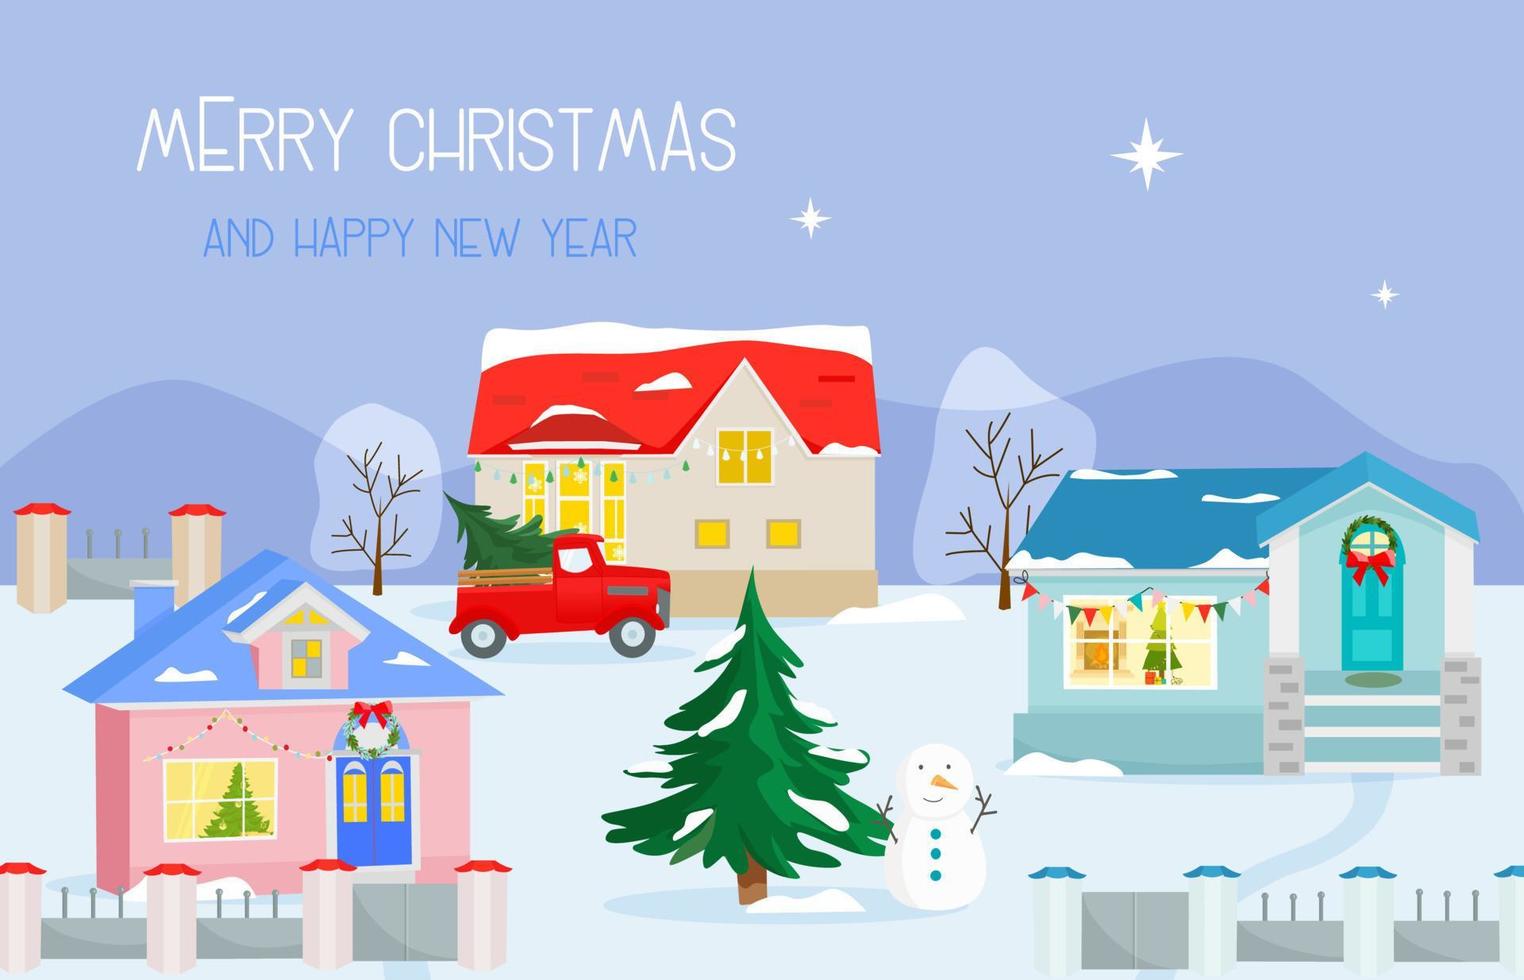 dia de natal na paisagem de aldeia com casas, árvore de natal e boneco de neve, fundo de inverno vetor